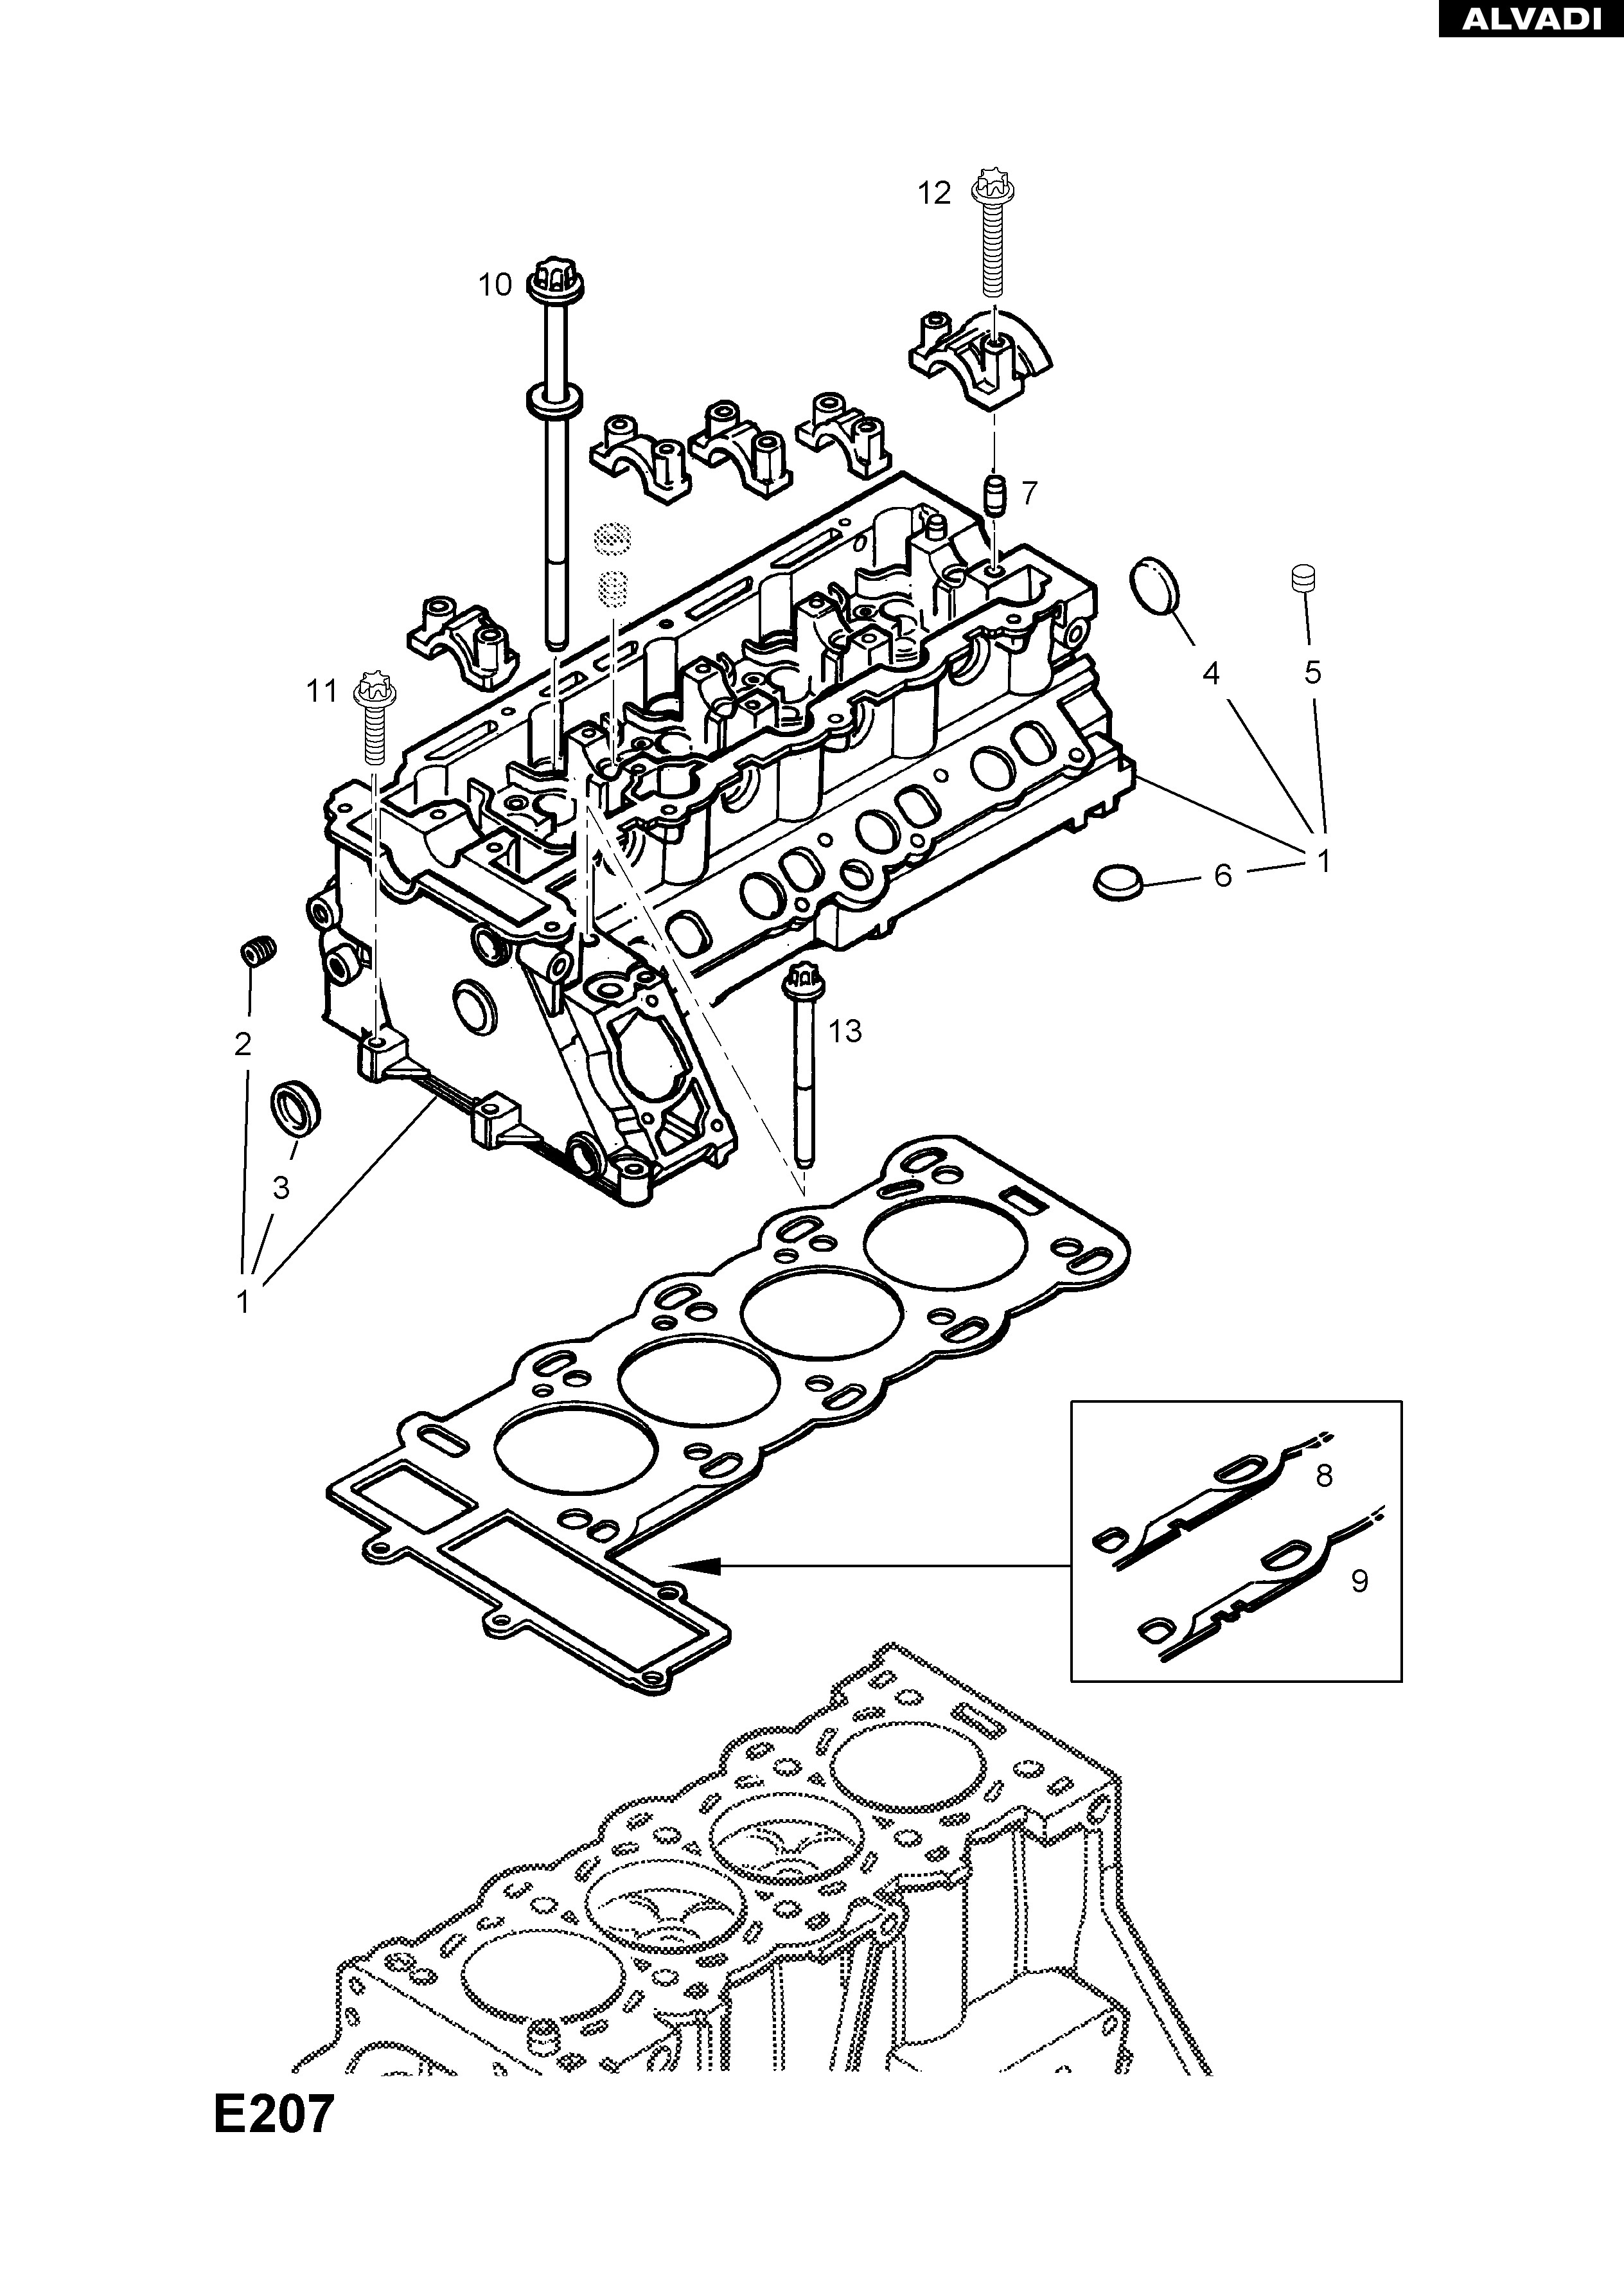 7 3 Diesel Engine Diagram Opel Y22dtr[l50 Lre] Turbo Diesel Engine Cylinder Head Plugs and Of 7 3 Diesel Engine Diagram